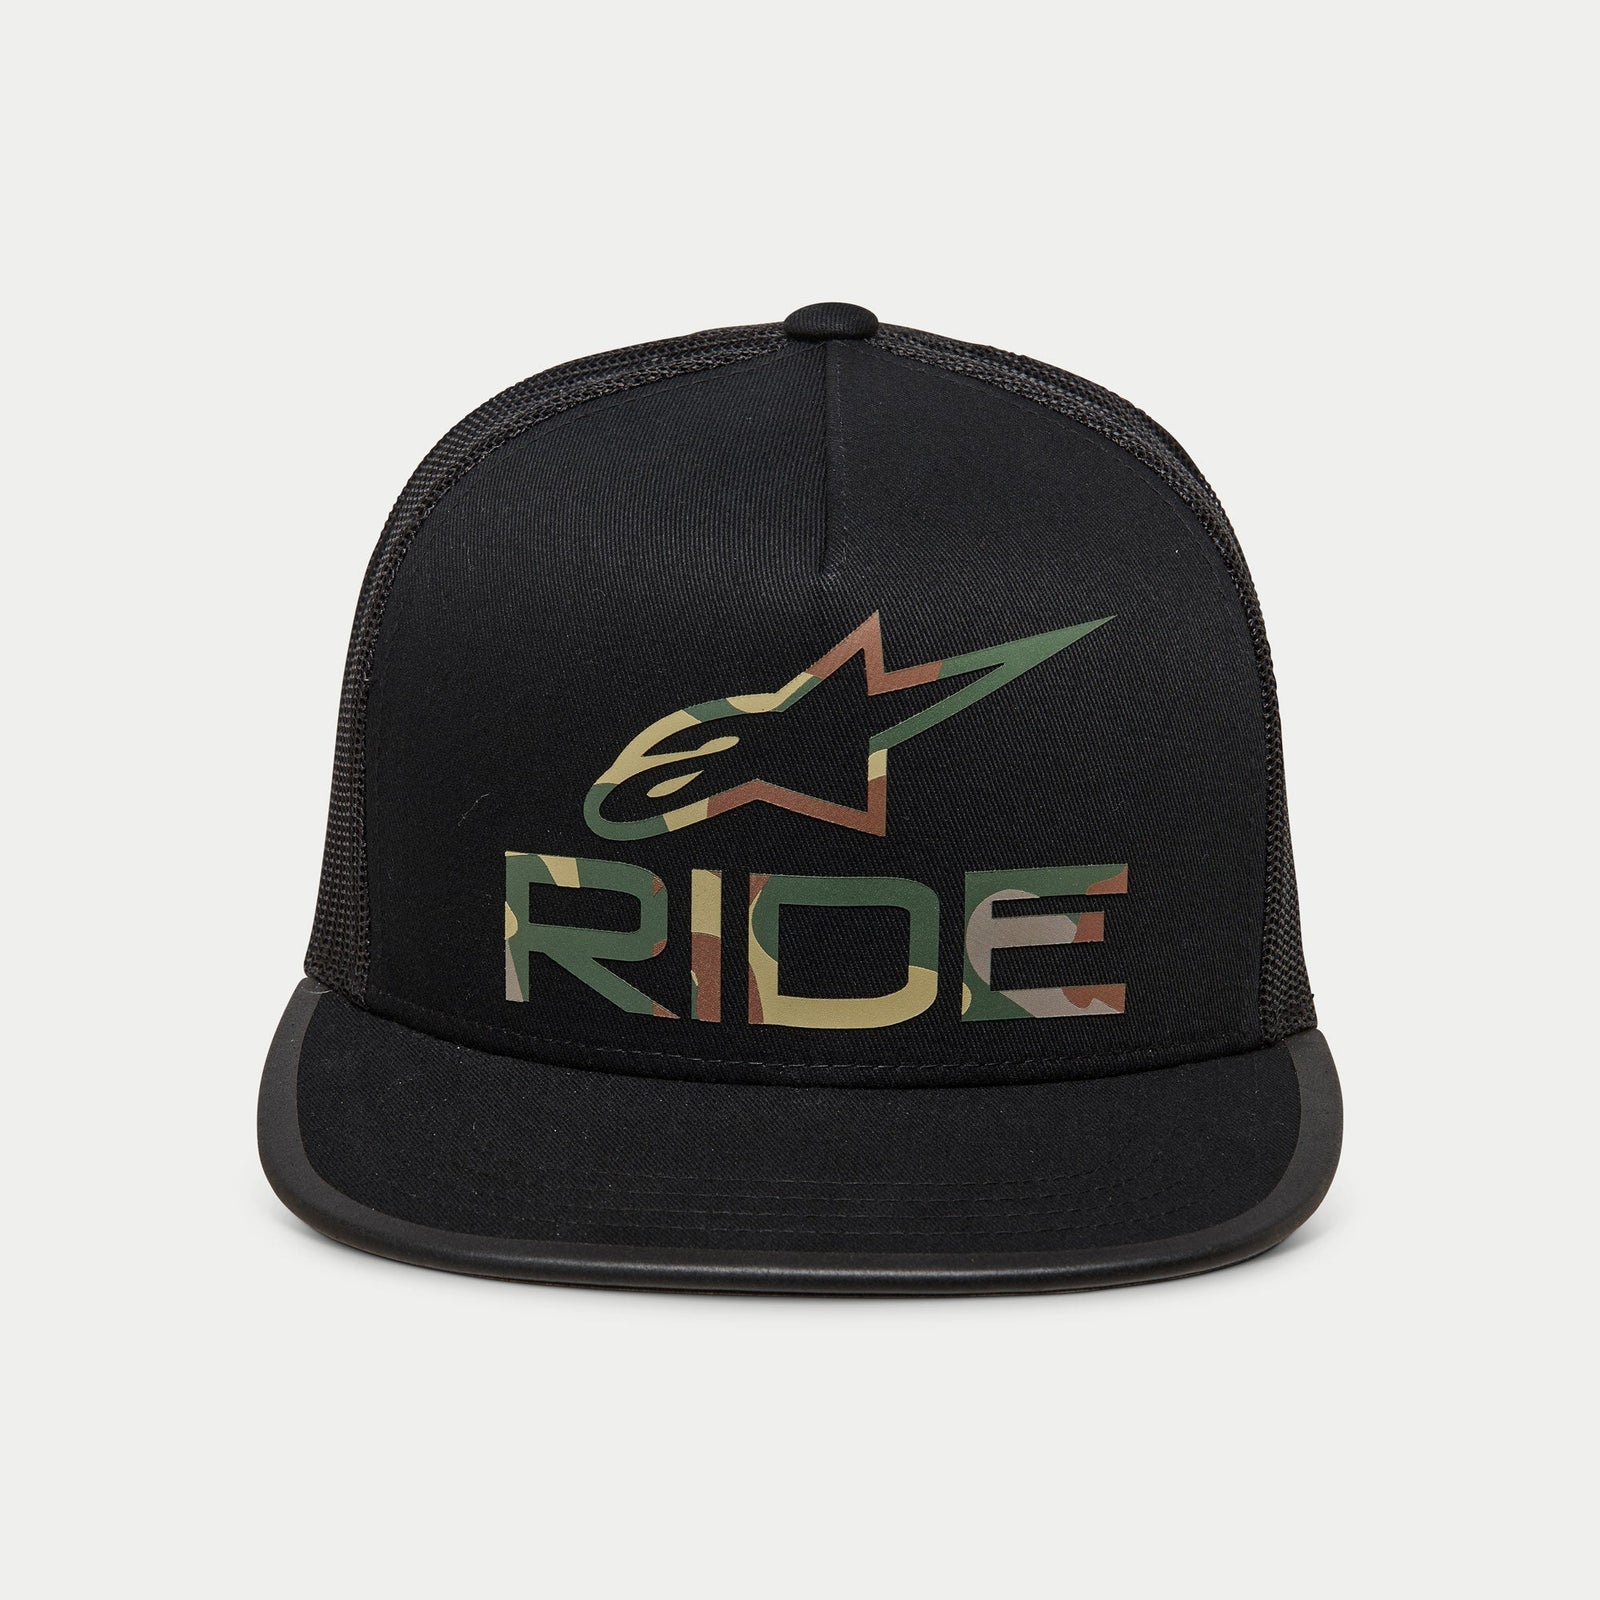 Ride 4.0 Camo Trucker Gorro